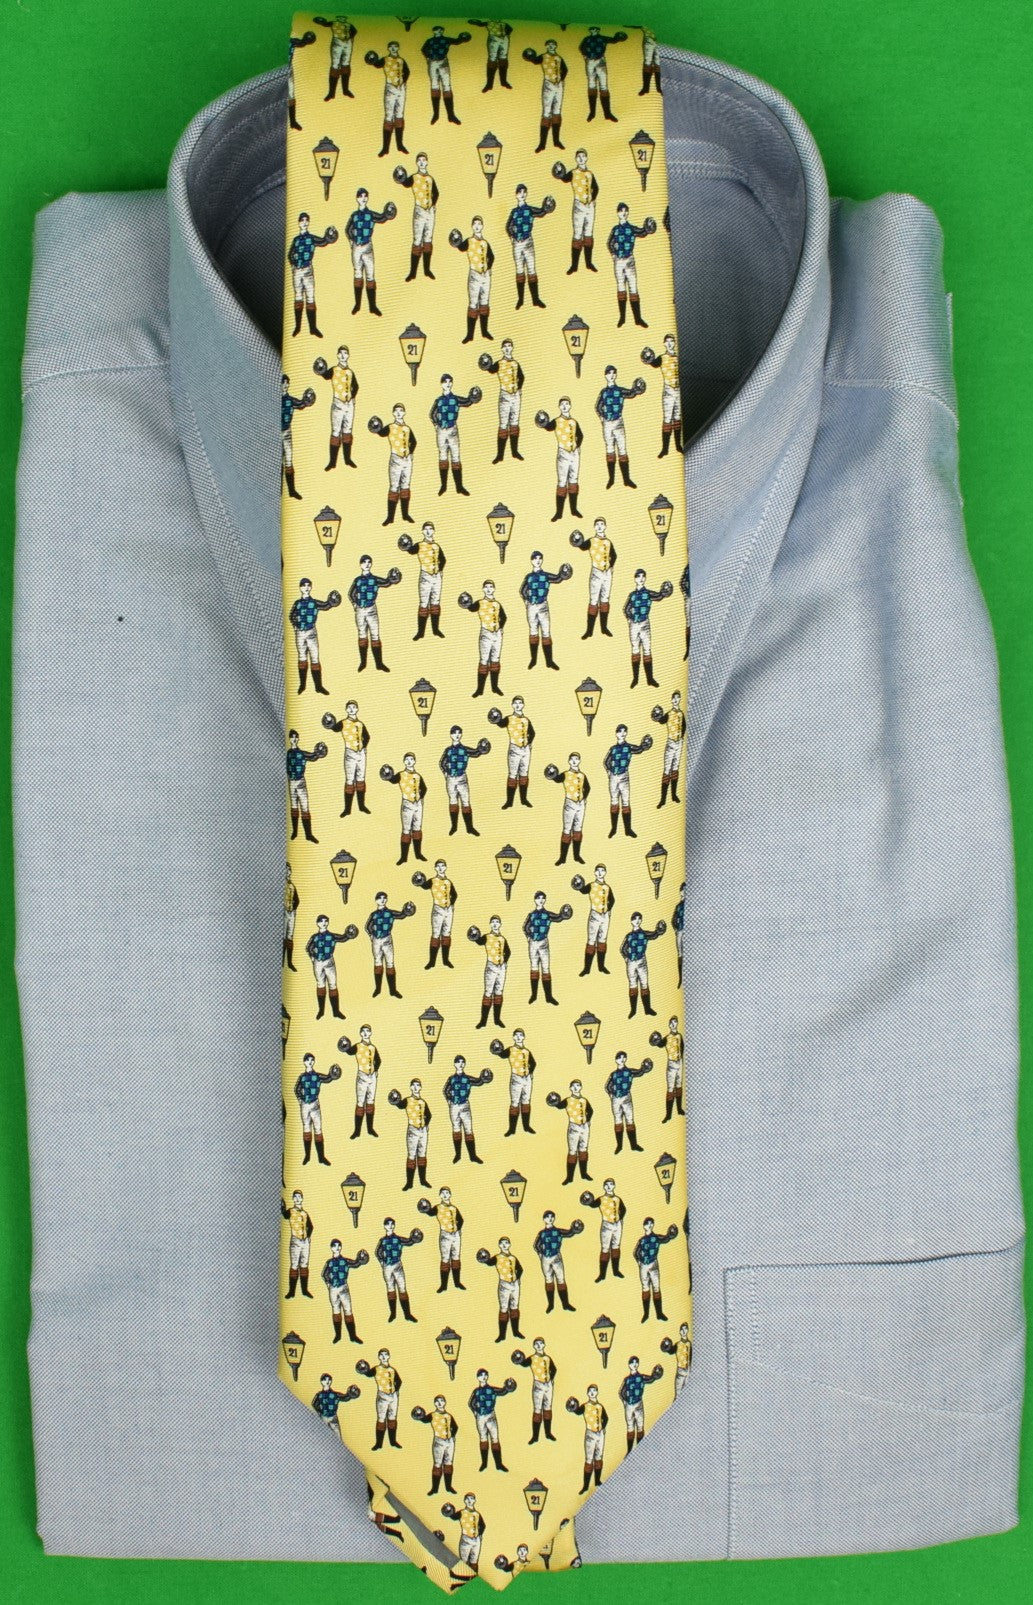 The "21" Club Jockey New York Yellow Silk Tie (SOLD)